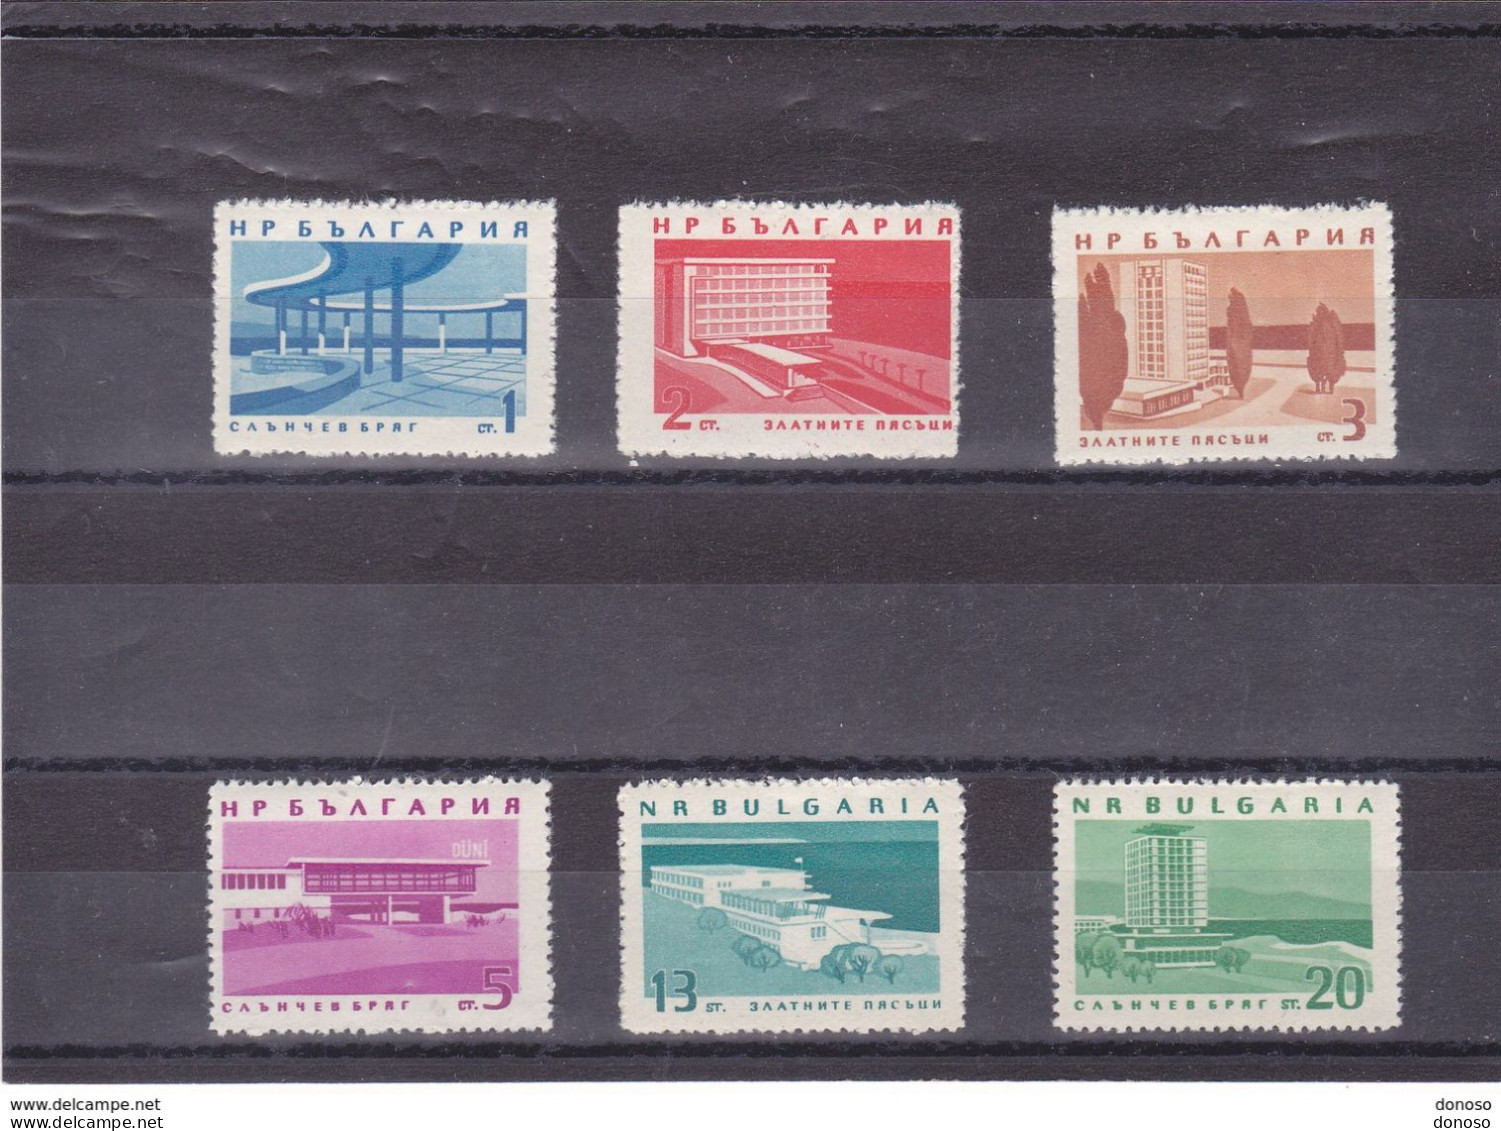 BULGARIE 1963 Côtes De La Mer Noire, Hôtels Yvert 1184-1189, Michel 1368-1373 NEUF** MNH Cote 11 Euros - Unused Stamps